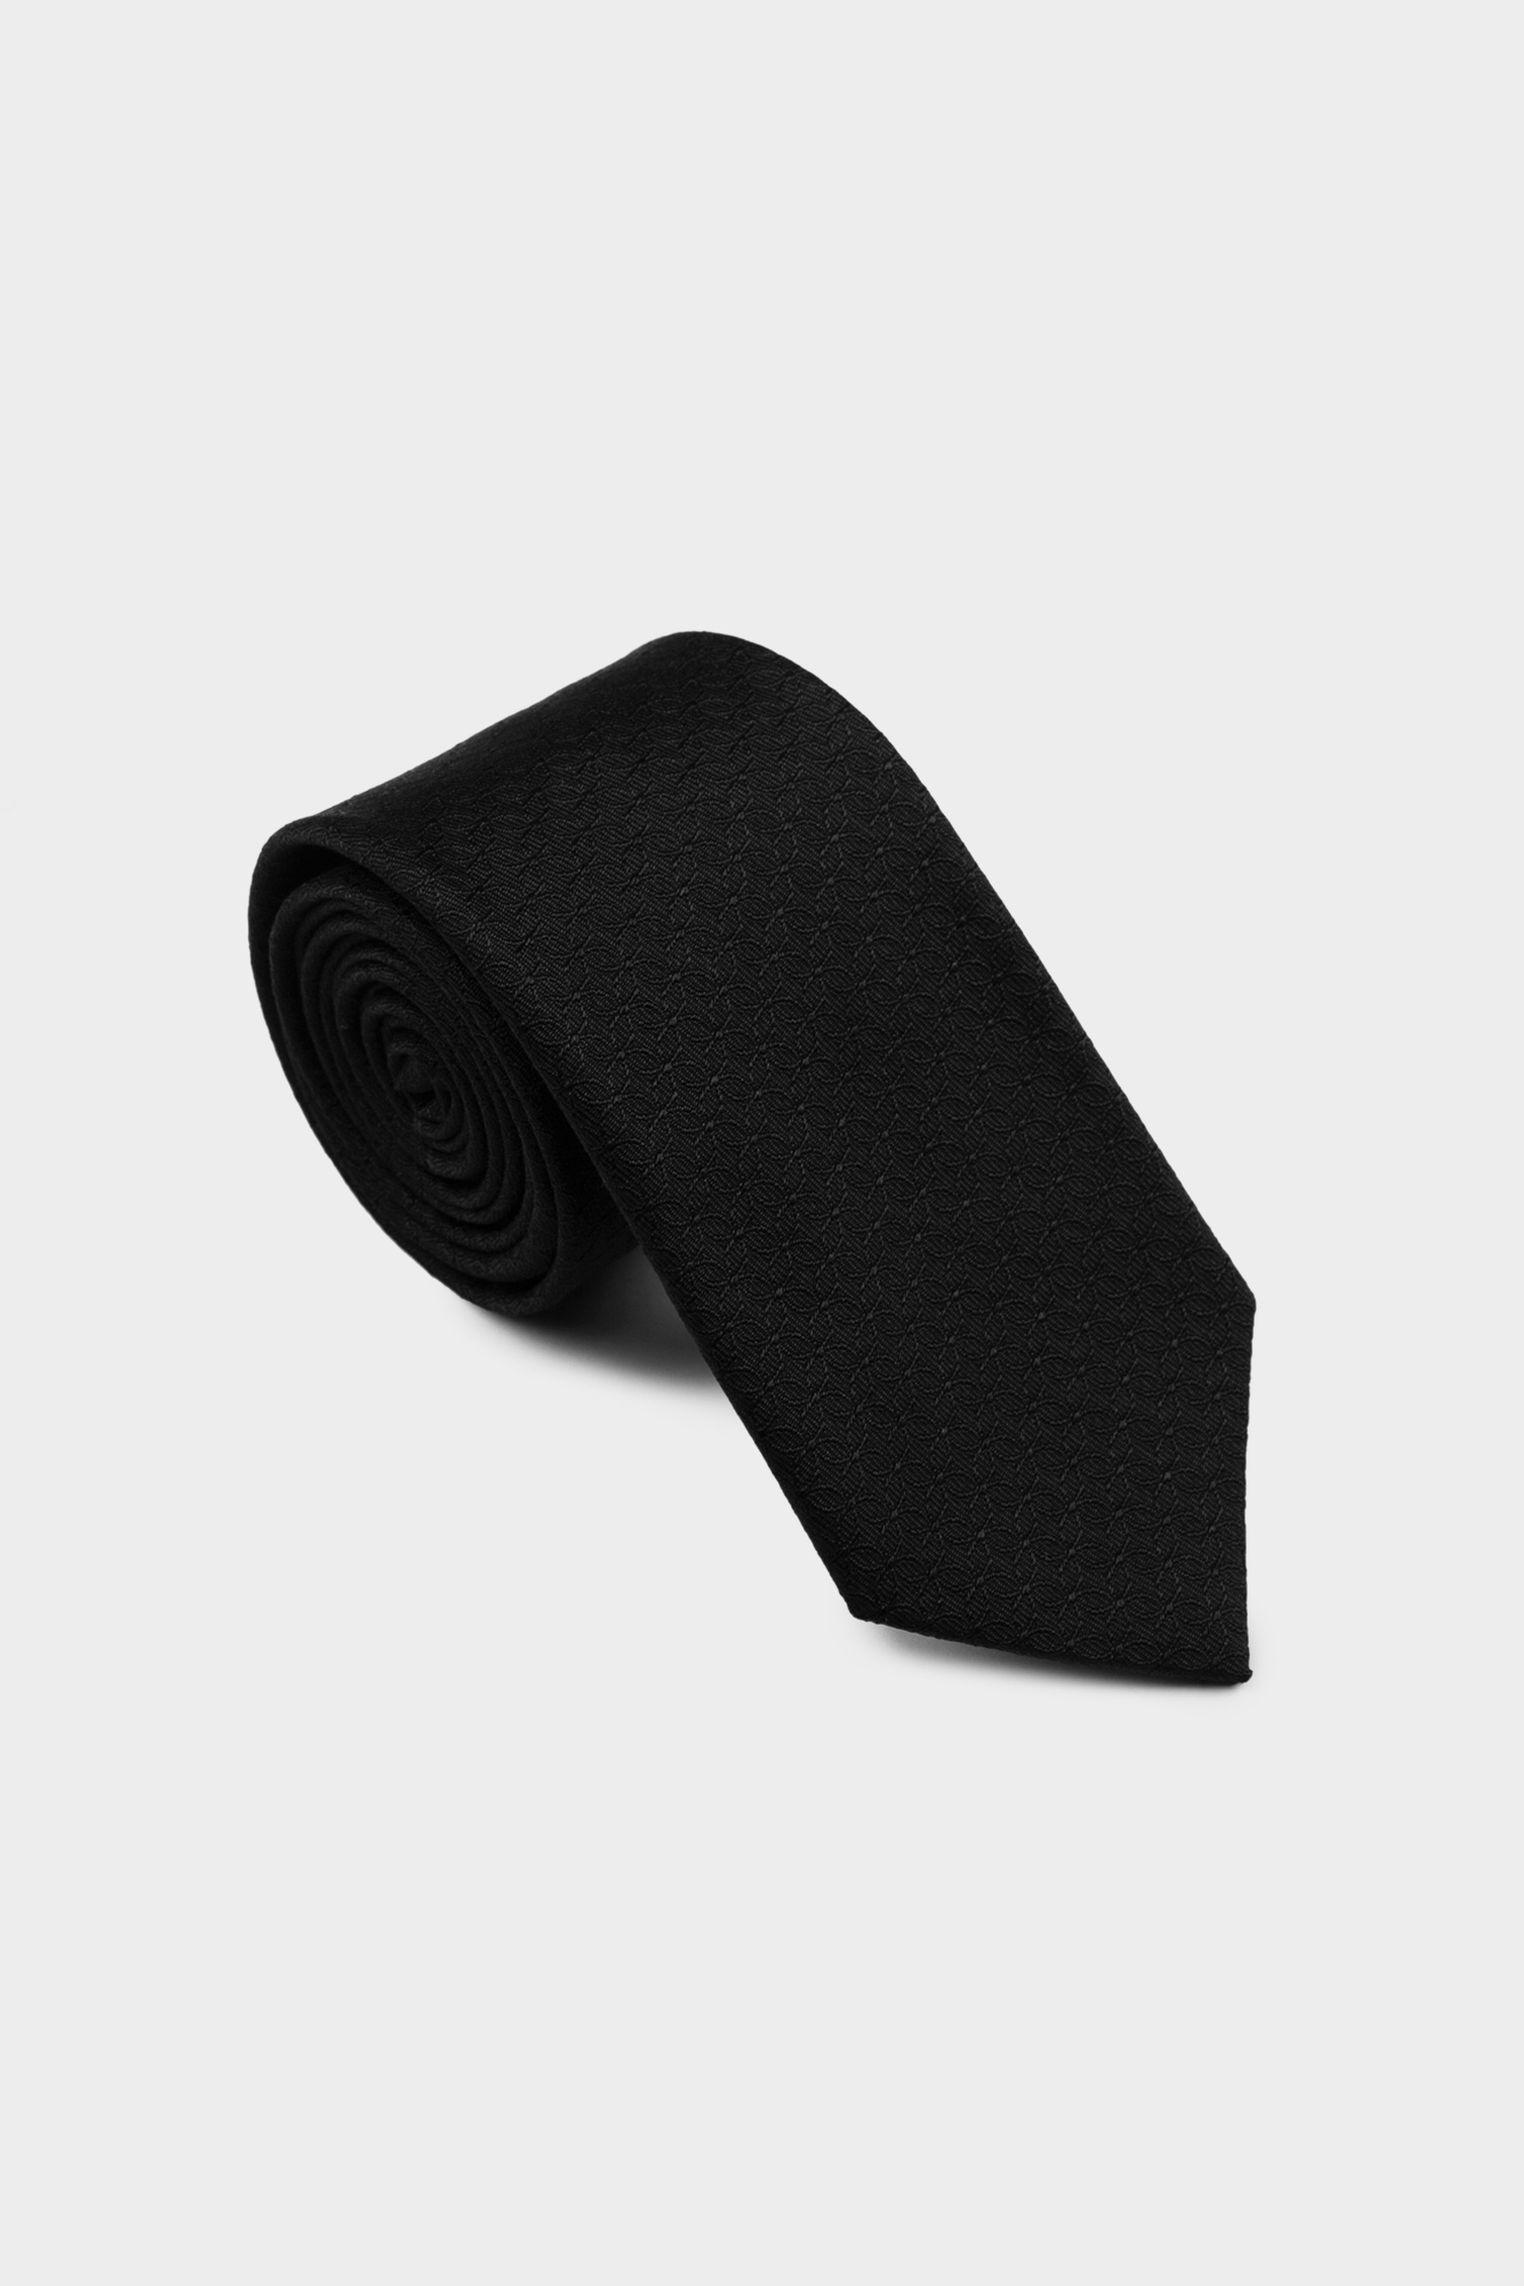 галстук LEROY черный LEROY_K04111_099 ,photo 1